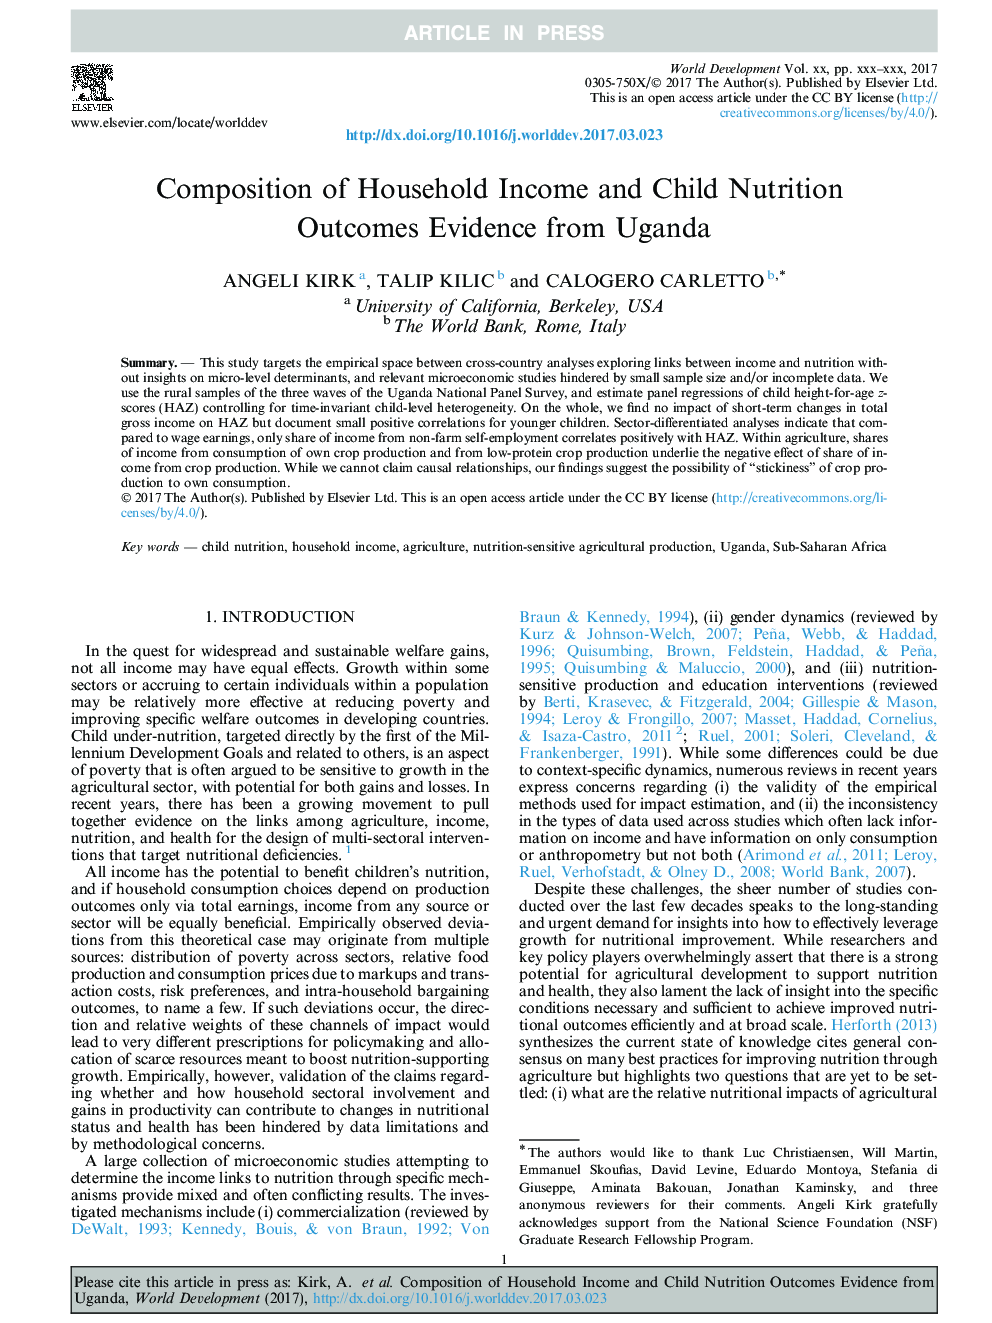 ترکیب درآمد خانوار و نتایج تغذیه کودکان شواهد از اوگاندا 